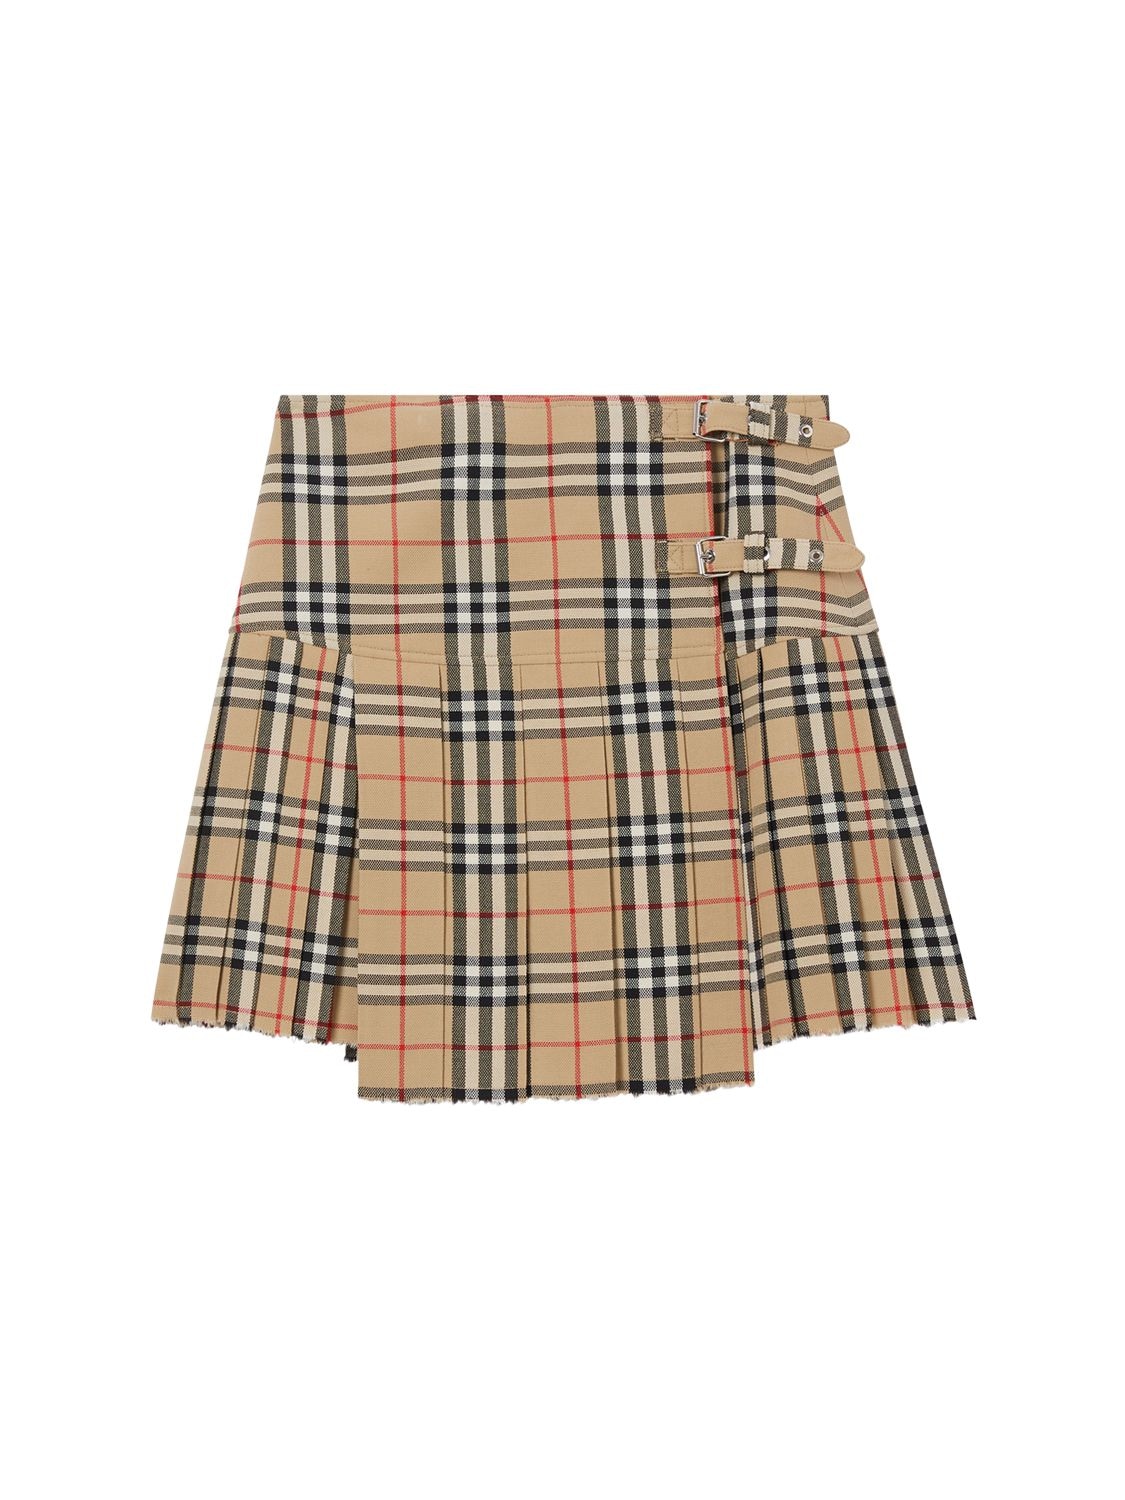 Image of Zoe Wool Printed Check Mini Kilt Skirt